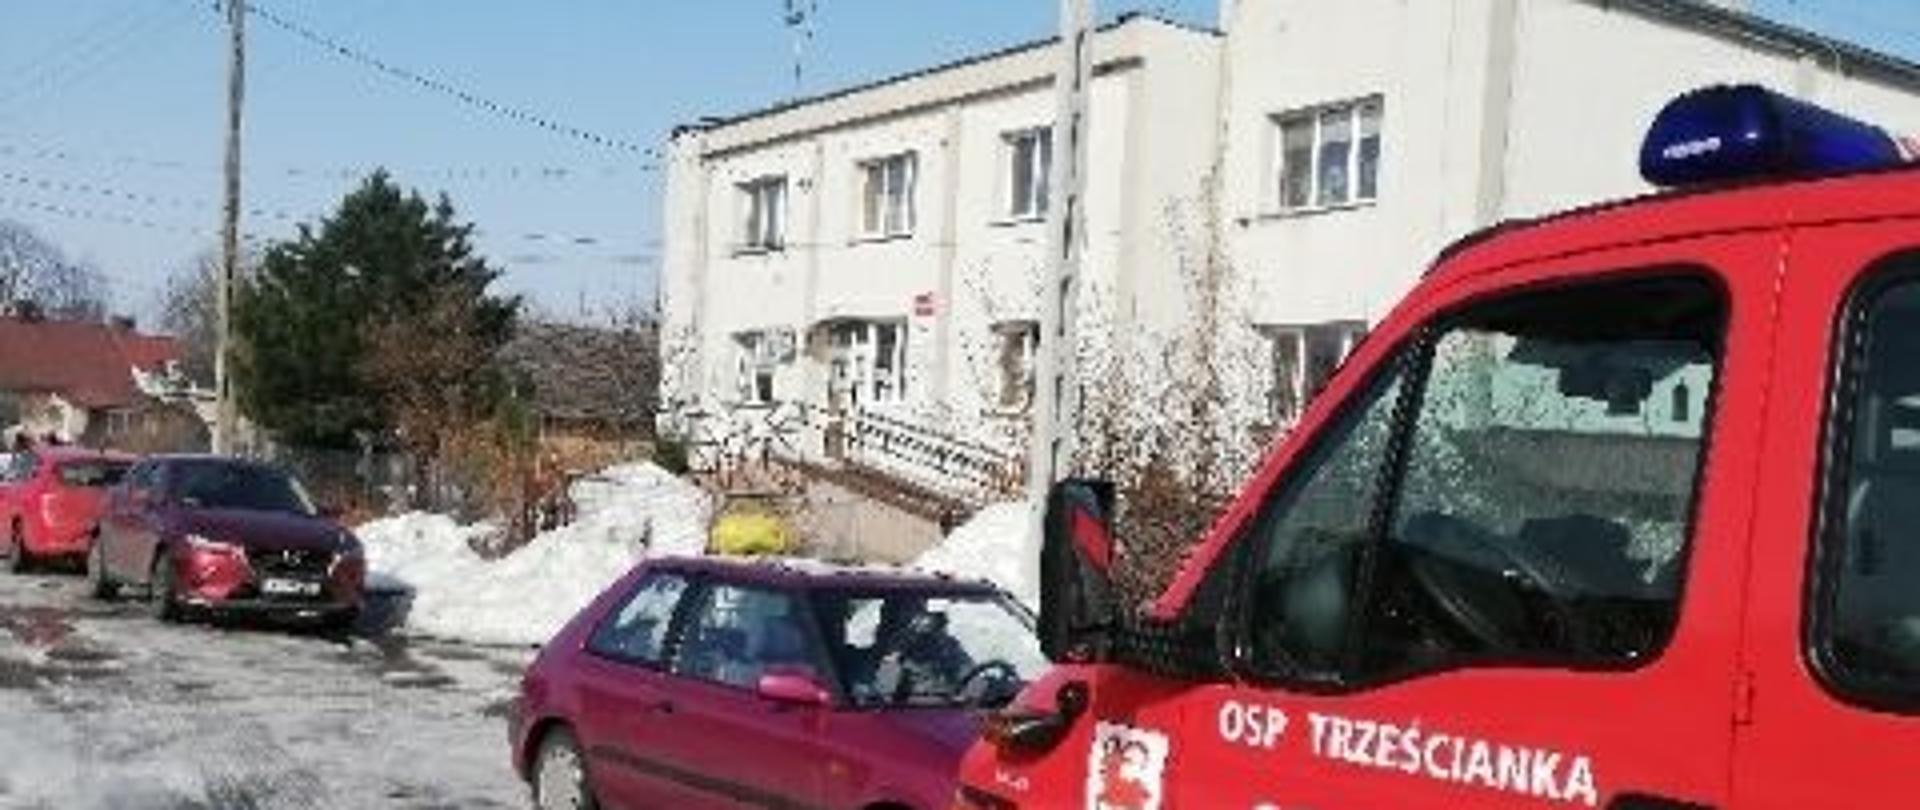 Na tle ośrodka zdrowia w Narwi czerwony strażacki samochód z napisem OSP Trześcianka